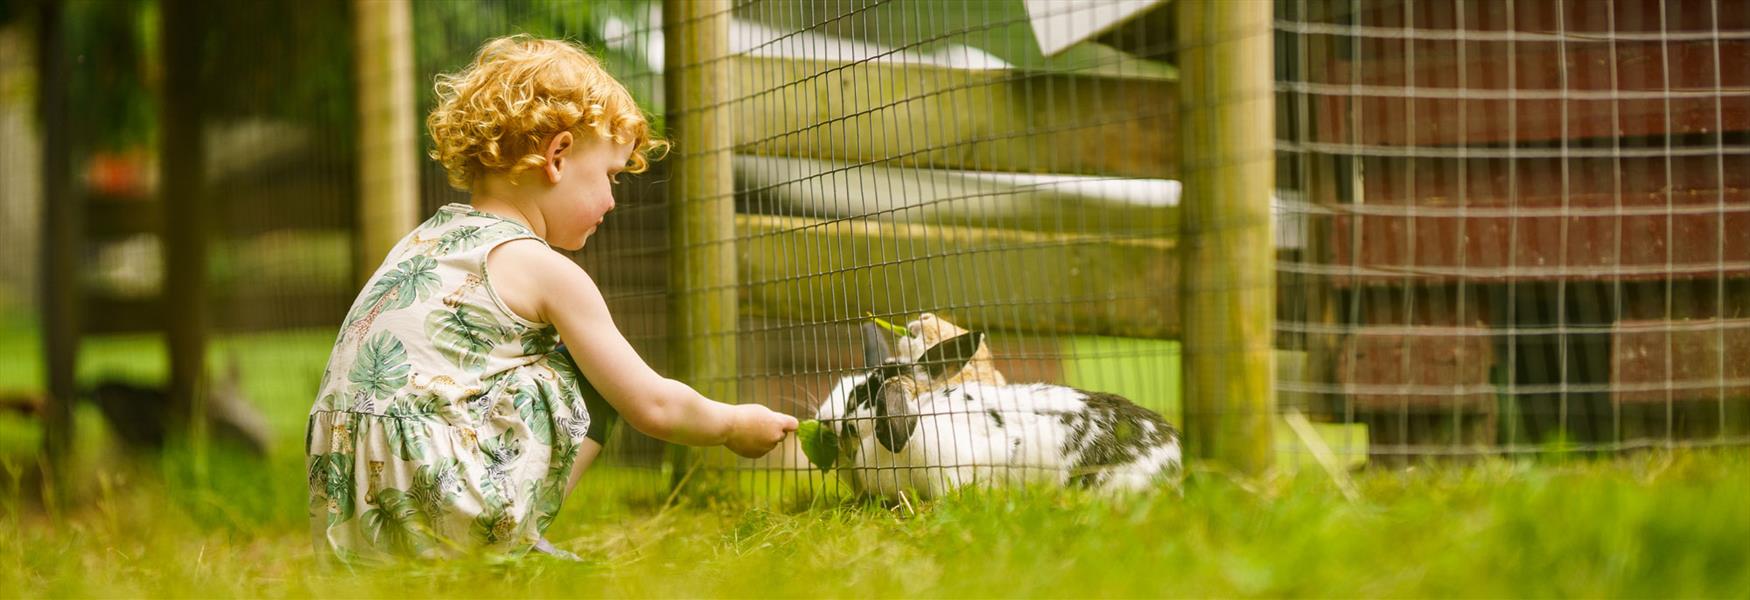 little girl feeds rabbits at Foldvik family park